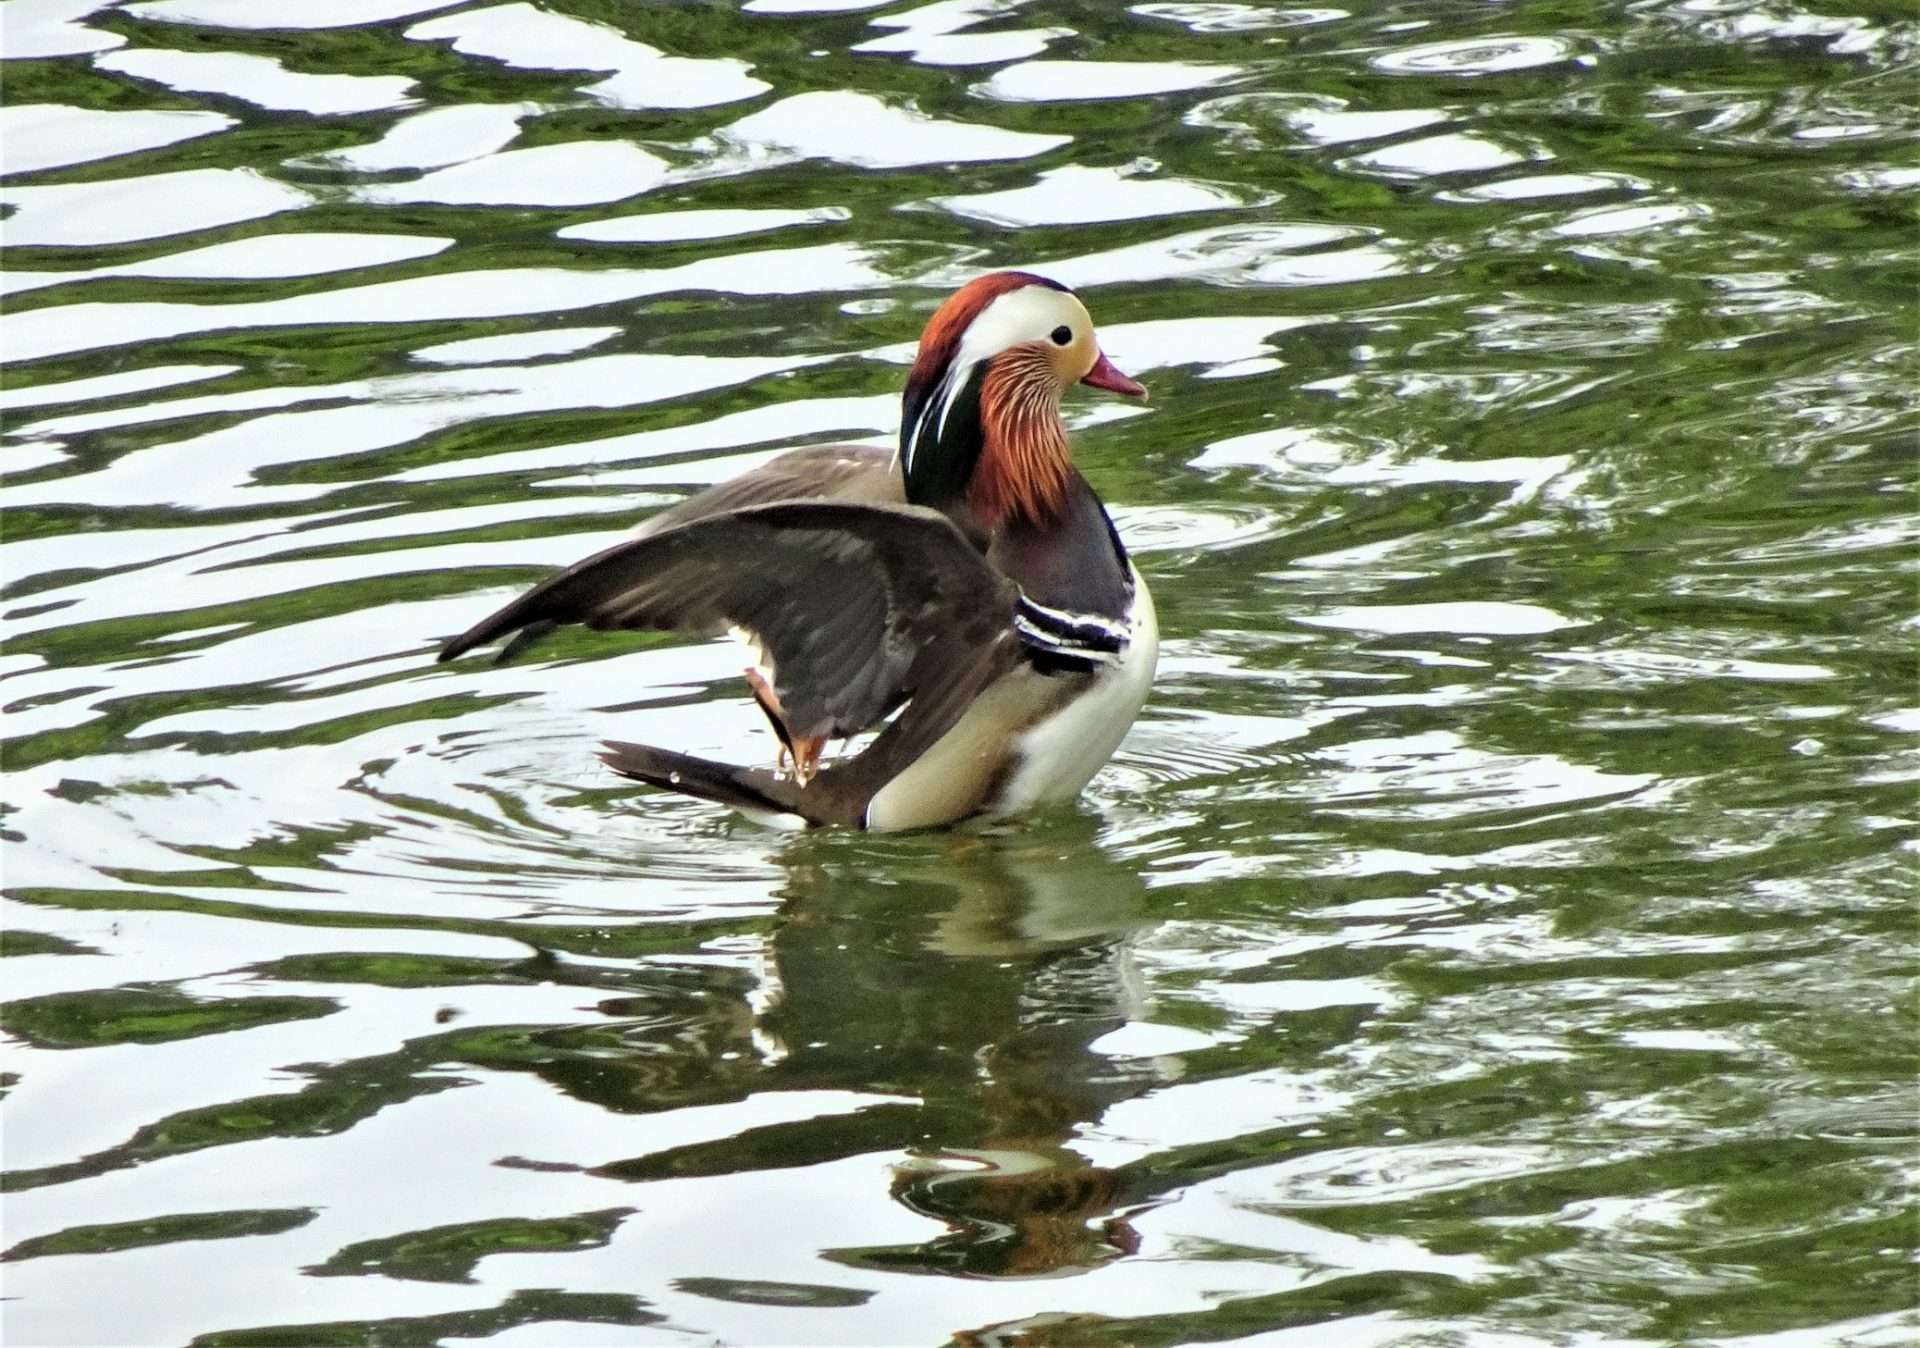 Mandarin Duck by Kenneth Bradley at Decoy park